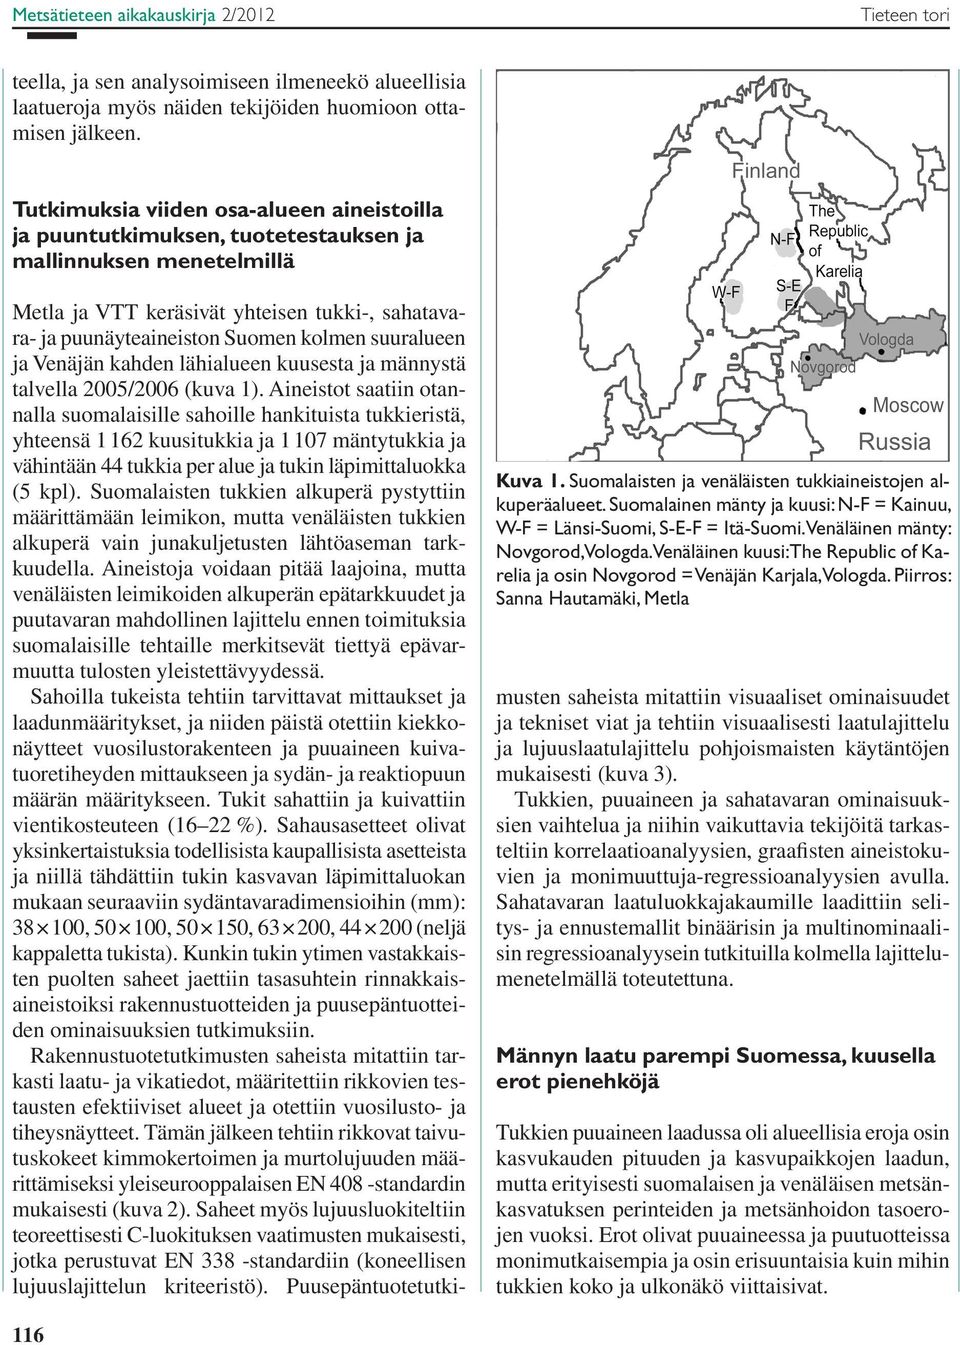 Suomalainen mänty ja kuusi: N-F = Kainuu, W-F = Länsi-Suomi, S-E-F = Itä-Suomi. Venäläinen mänty: Novgorod, Vologda.